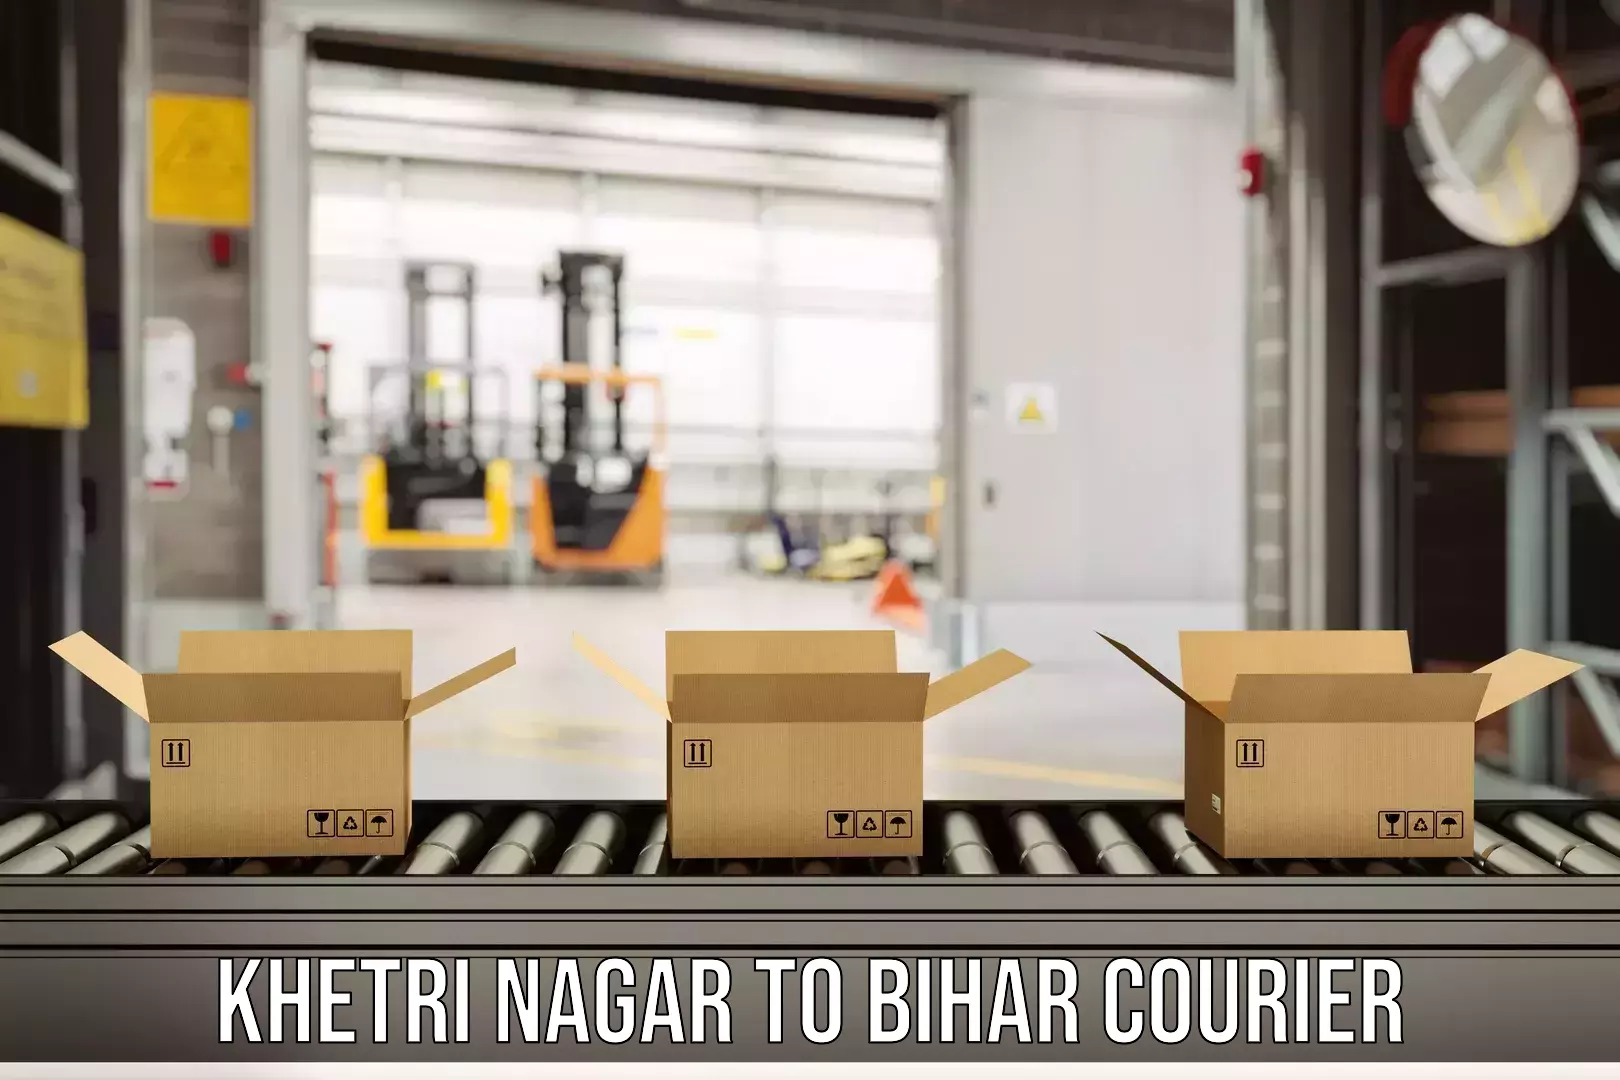 Modern delivery methods Khetri Nagar to Sheohar